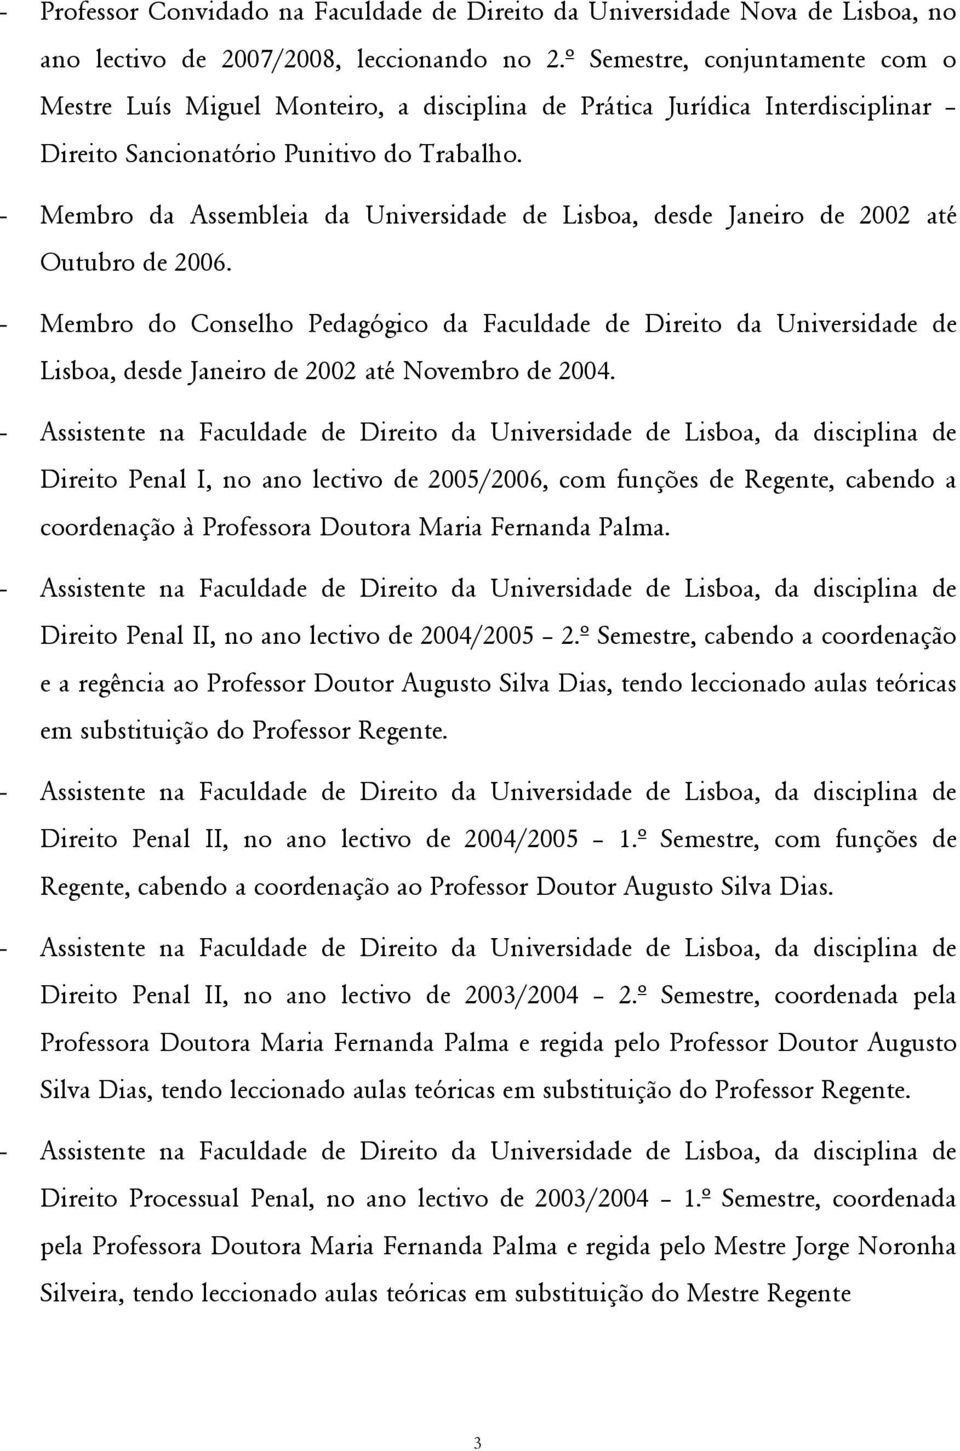 - Membro da Assembleia da Universidade de Lisboa, desde Janeiro de 2002 até Outubro de 2006.